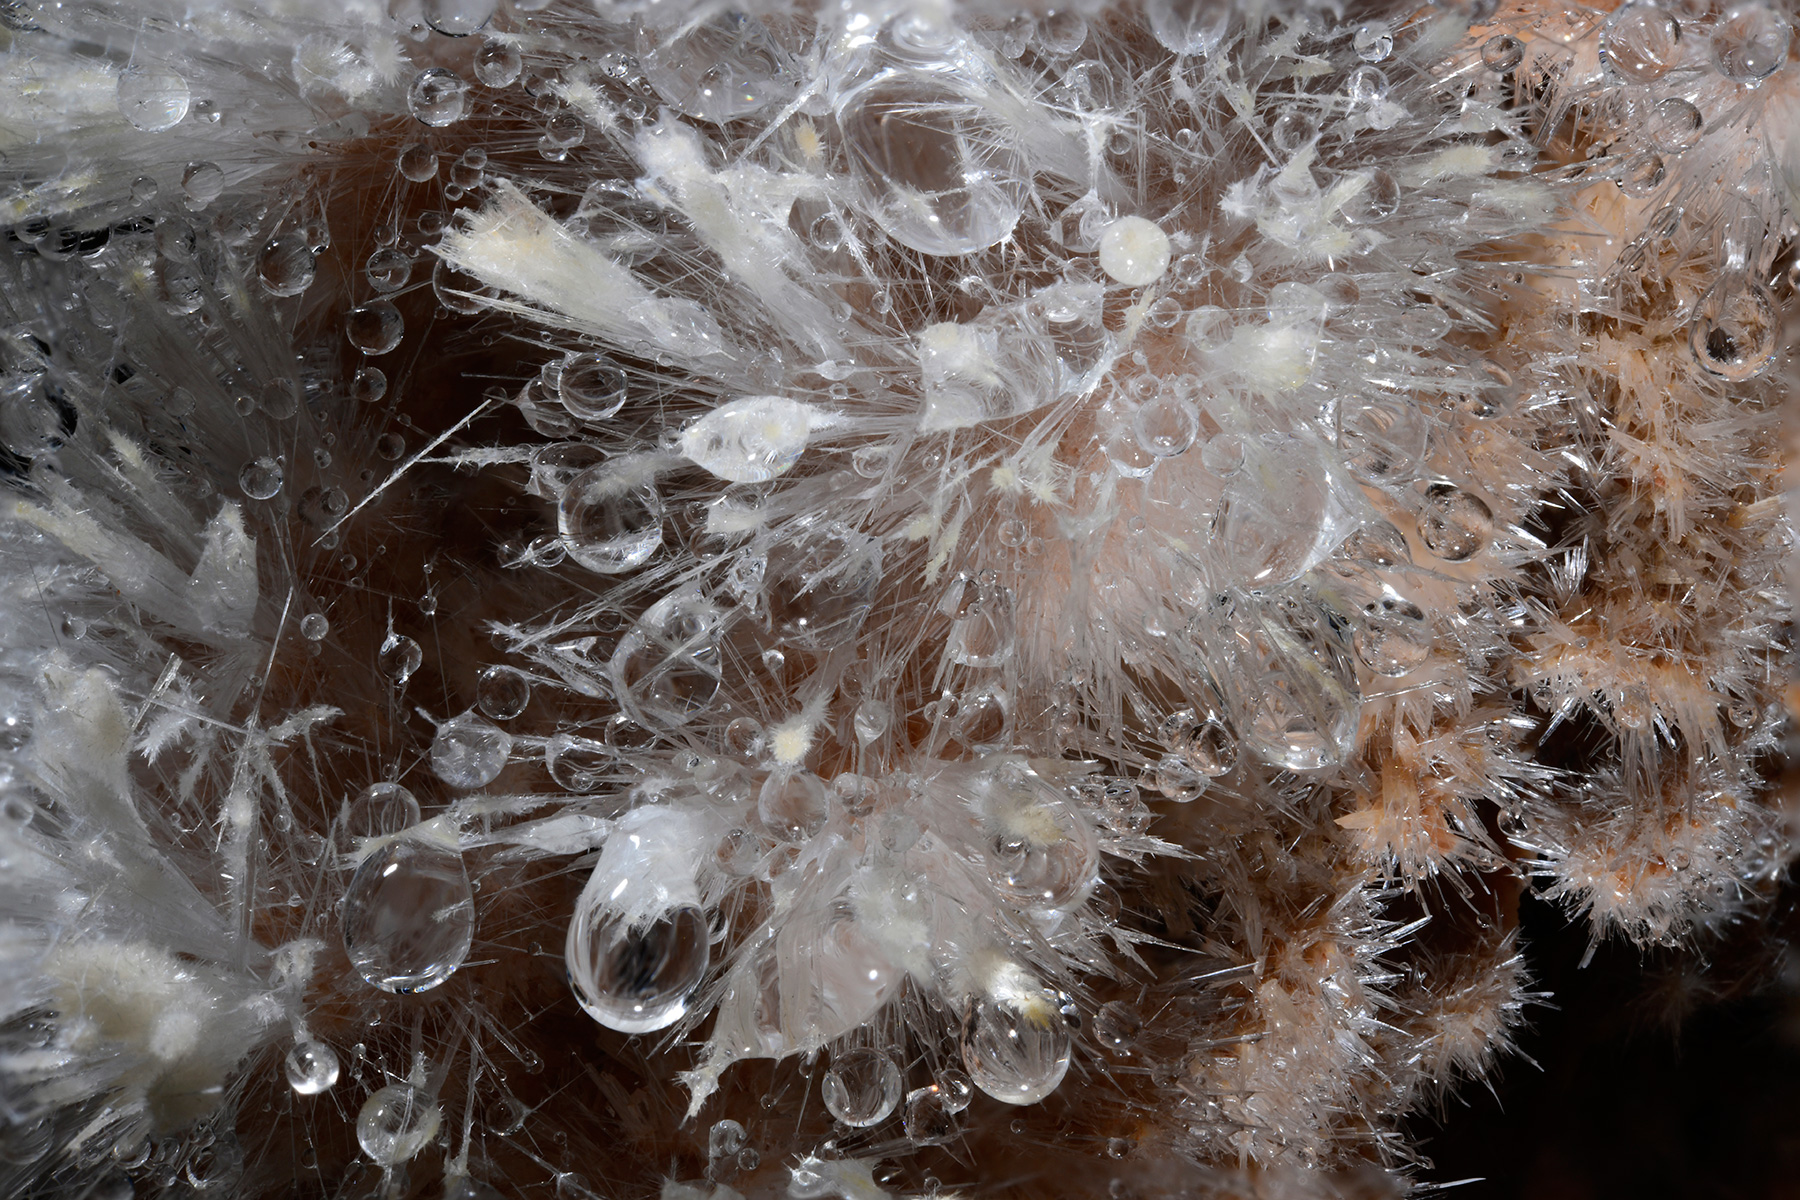 Grotte de Clamouse (Hérault) - Gouttes d'eau dans un bouquet d'aiguilles d'aragonite. (assemblage de 15 photos en focus stacking).